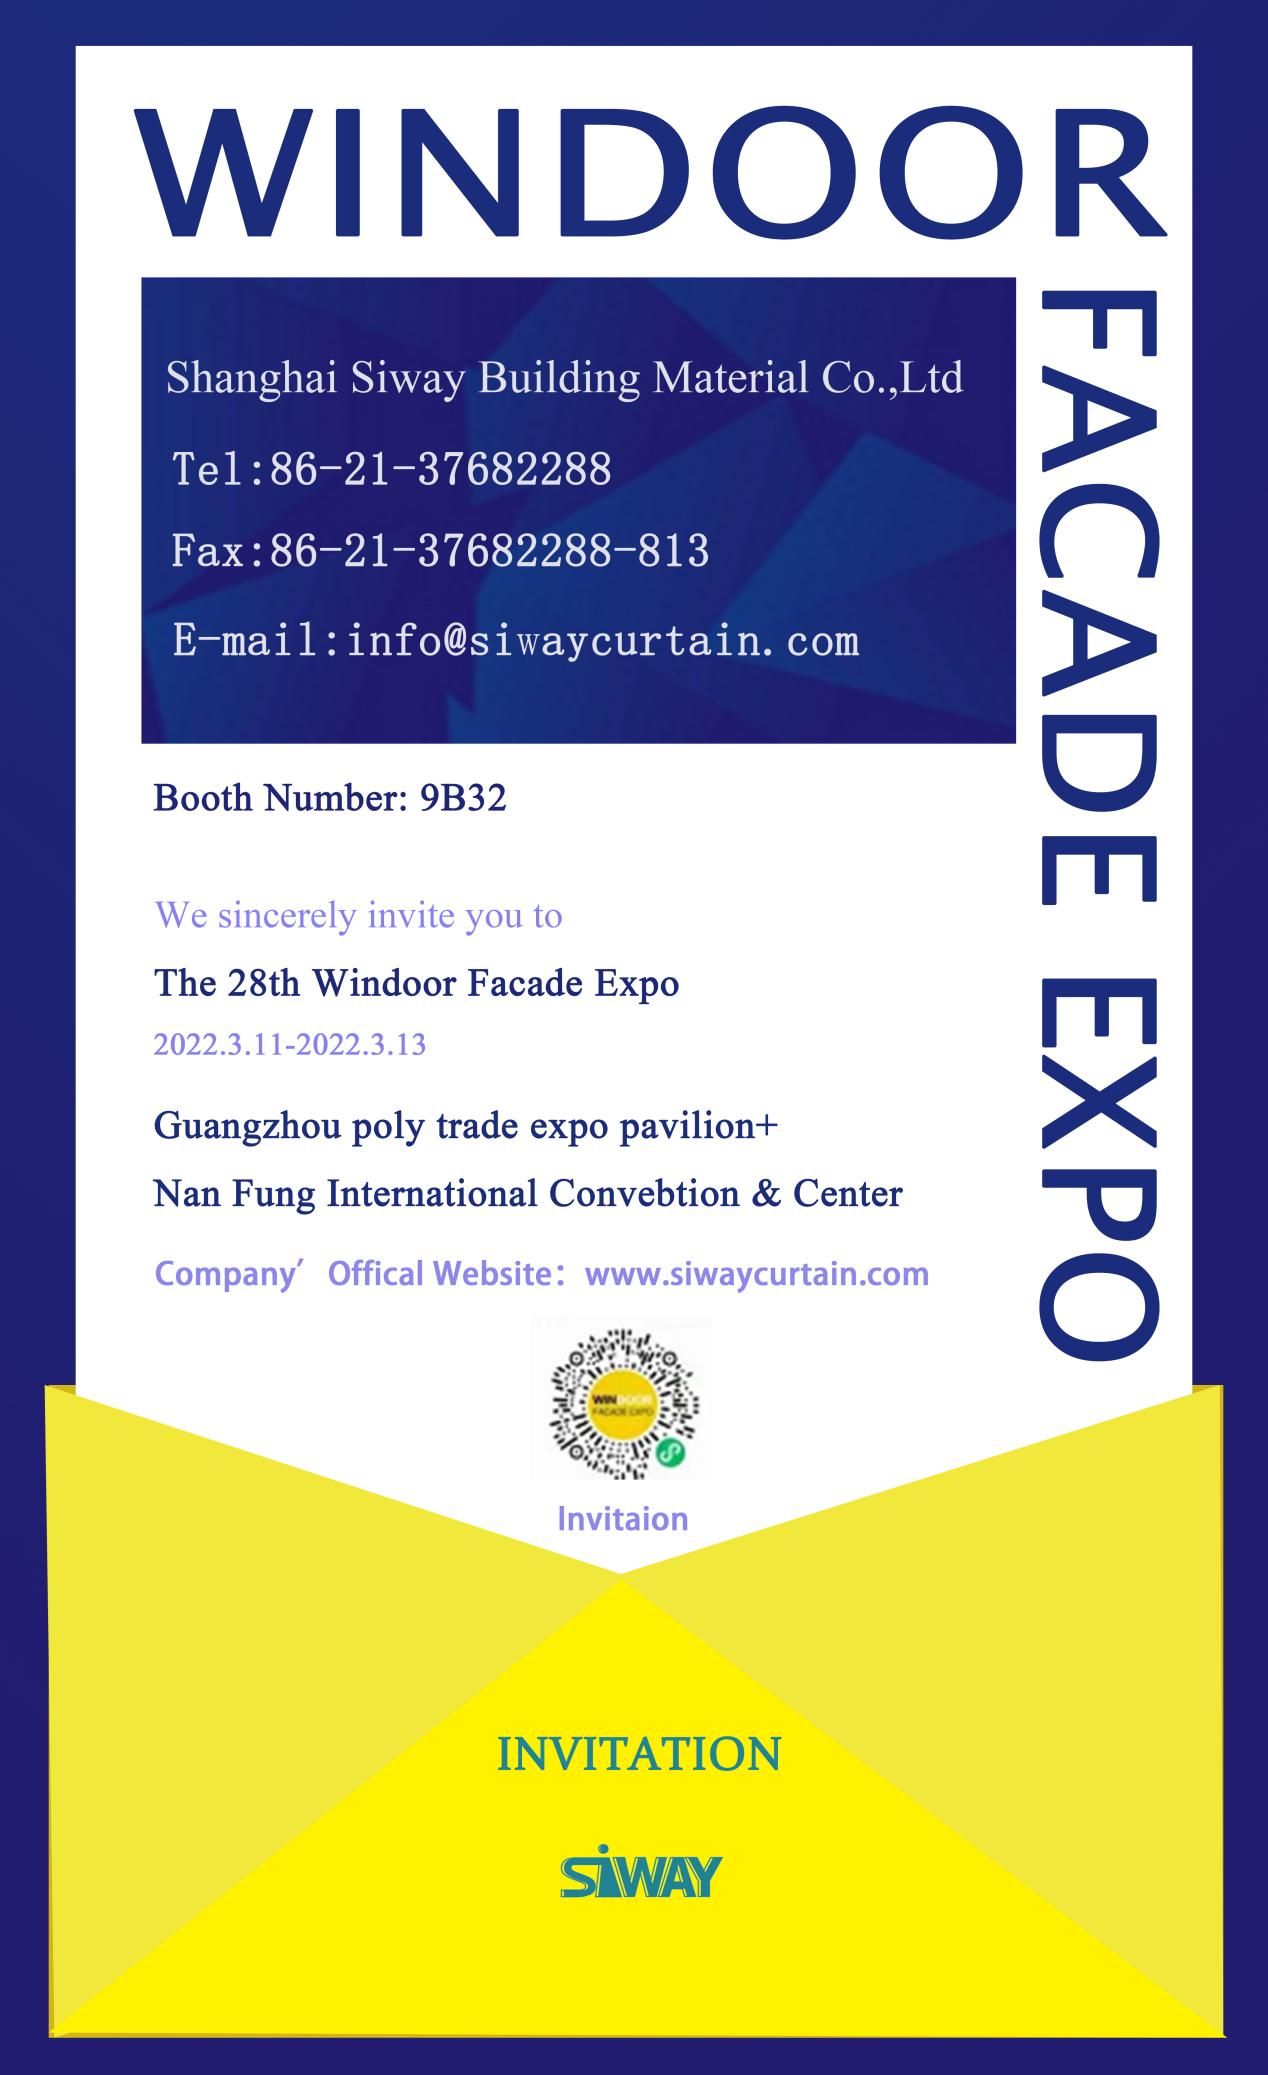 Nuo 1995 m. „Windoor Facade Expo“ vyksta kartu su Jianmei, Fenglu, Xingfa ir kitomis įmonėmis, kurių metiniai pardavimai viršija 5 mlrd. f (1)